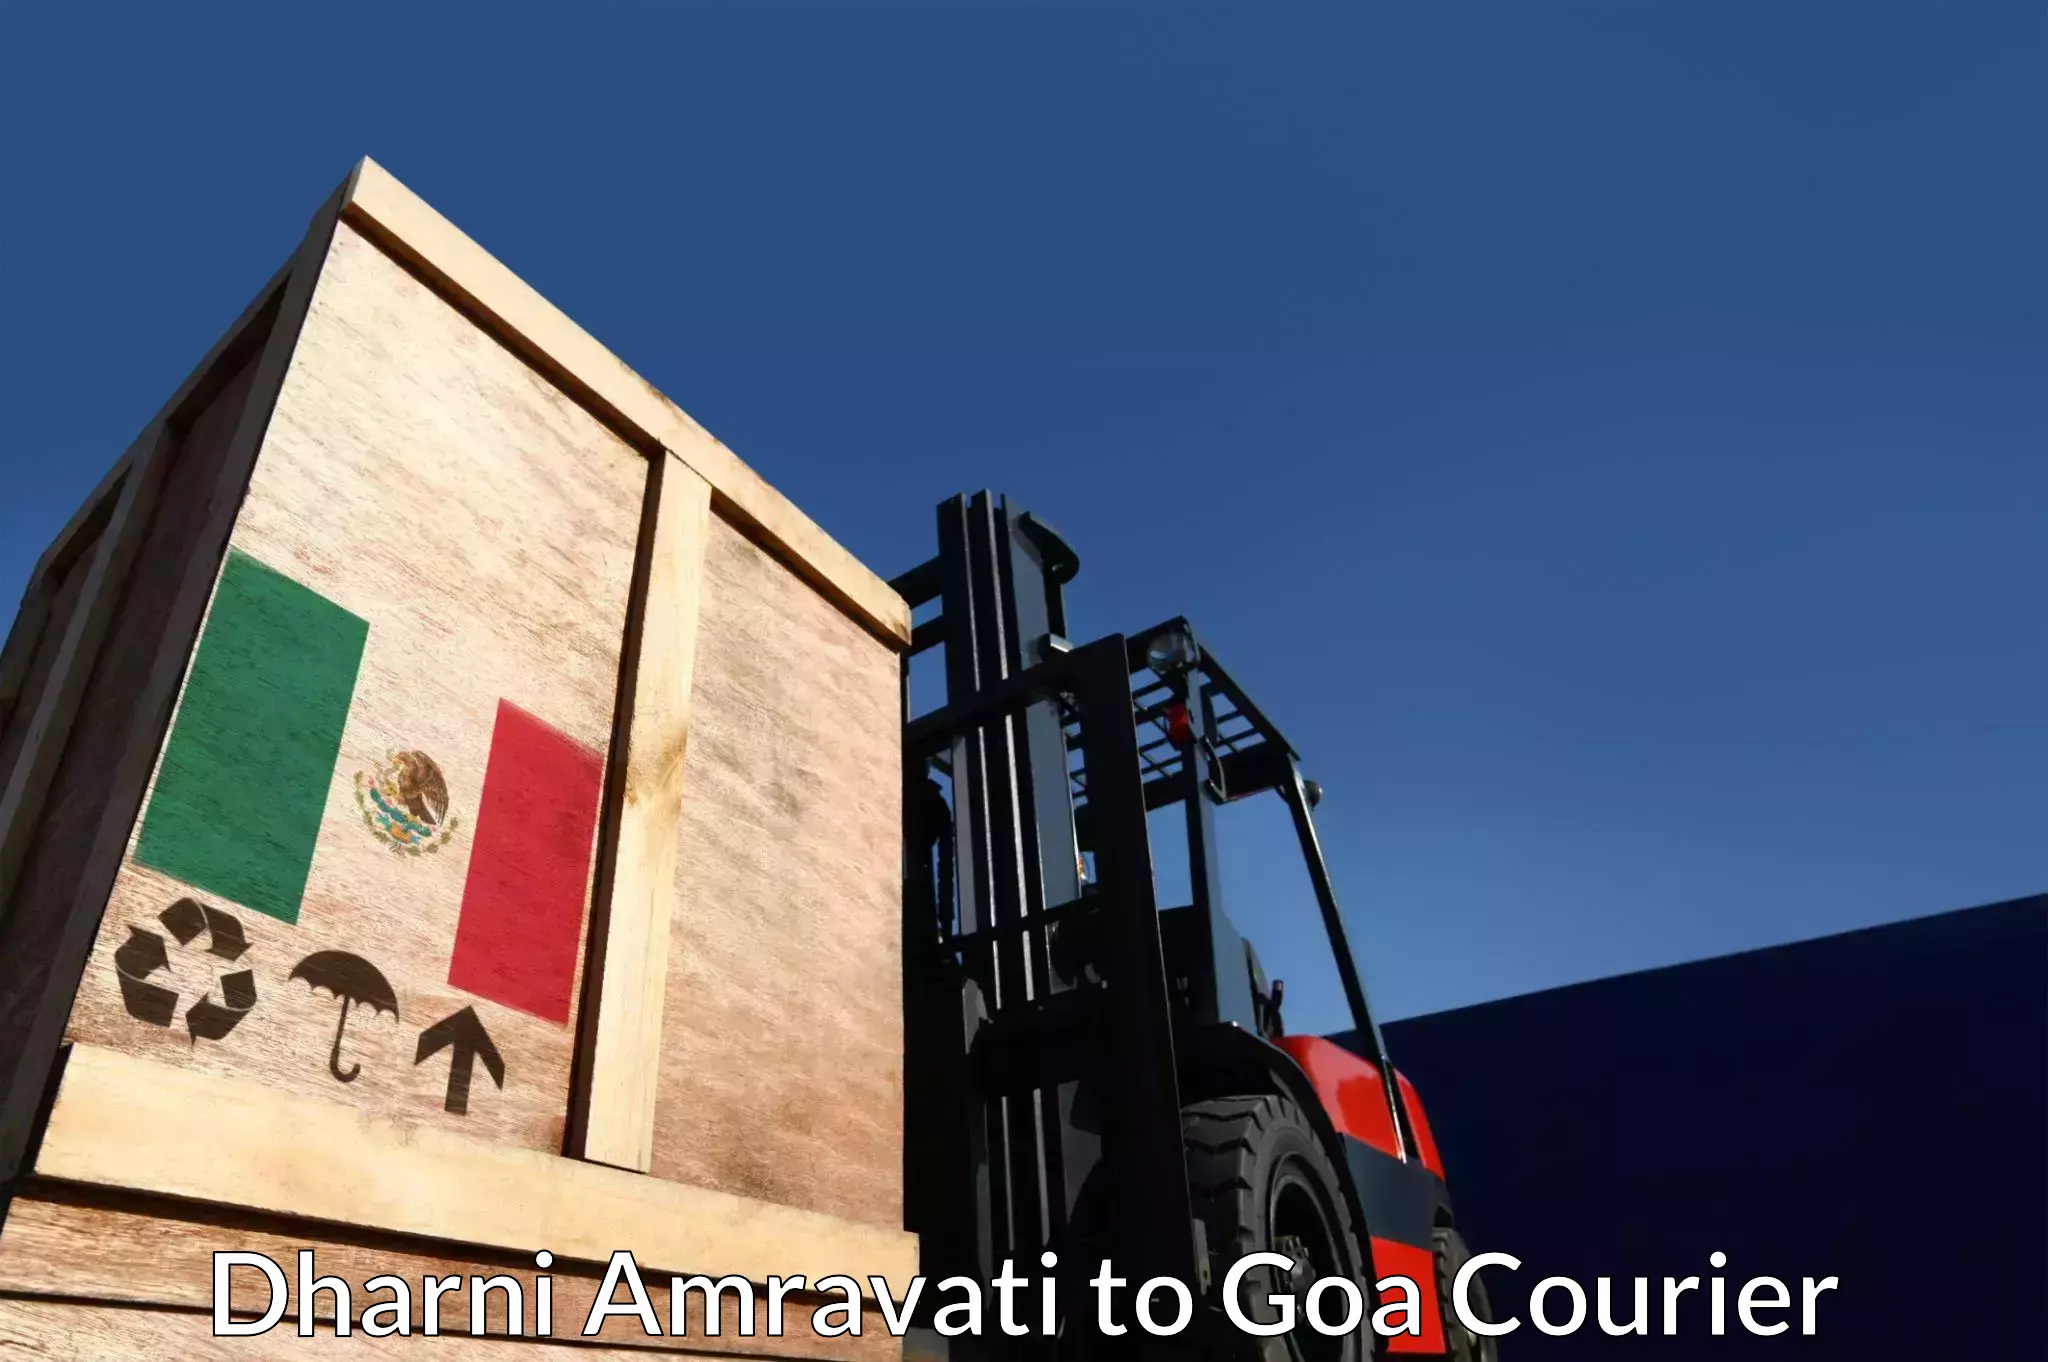 Next-day freight services Dharni Amravati to Goa